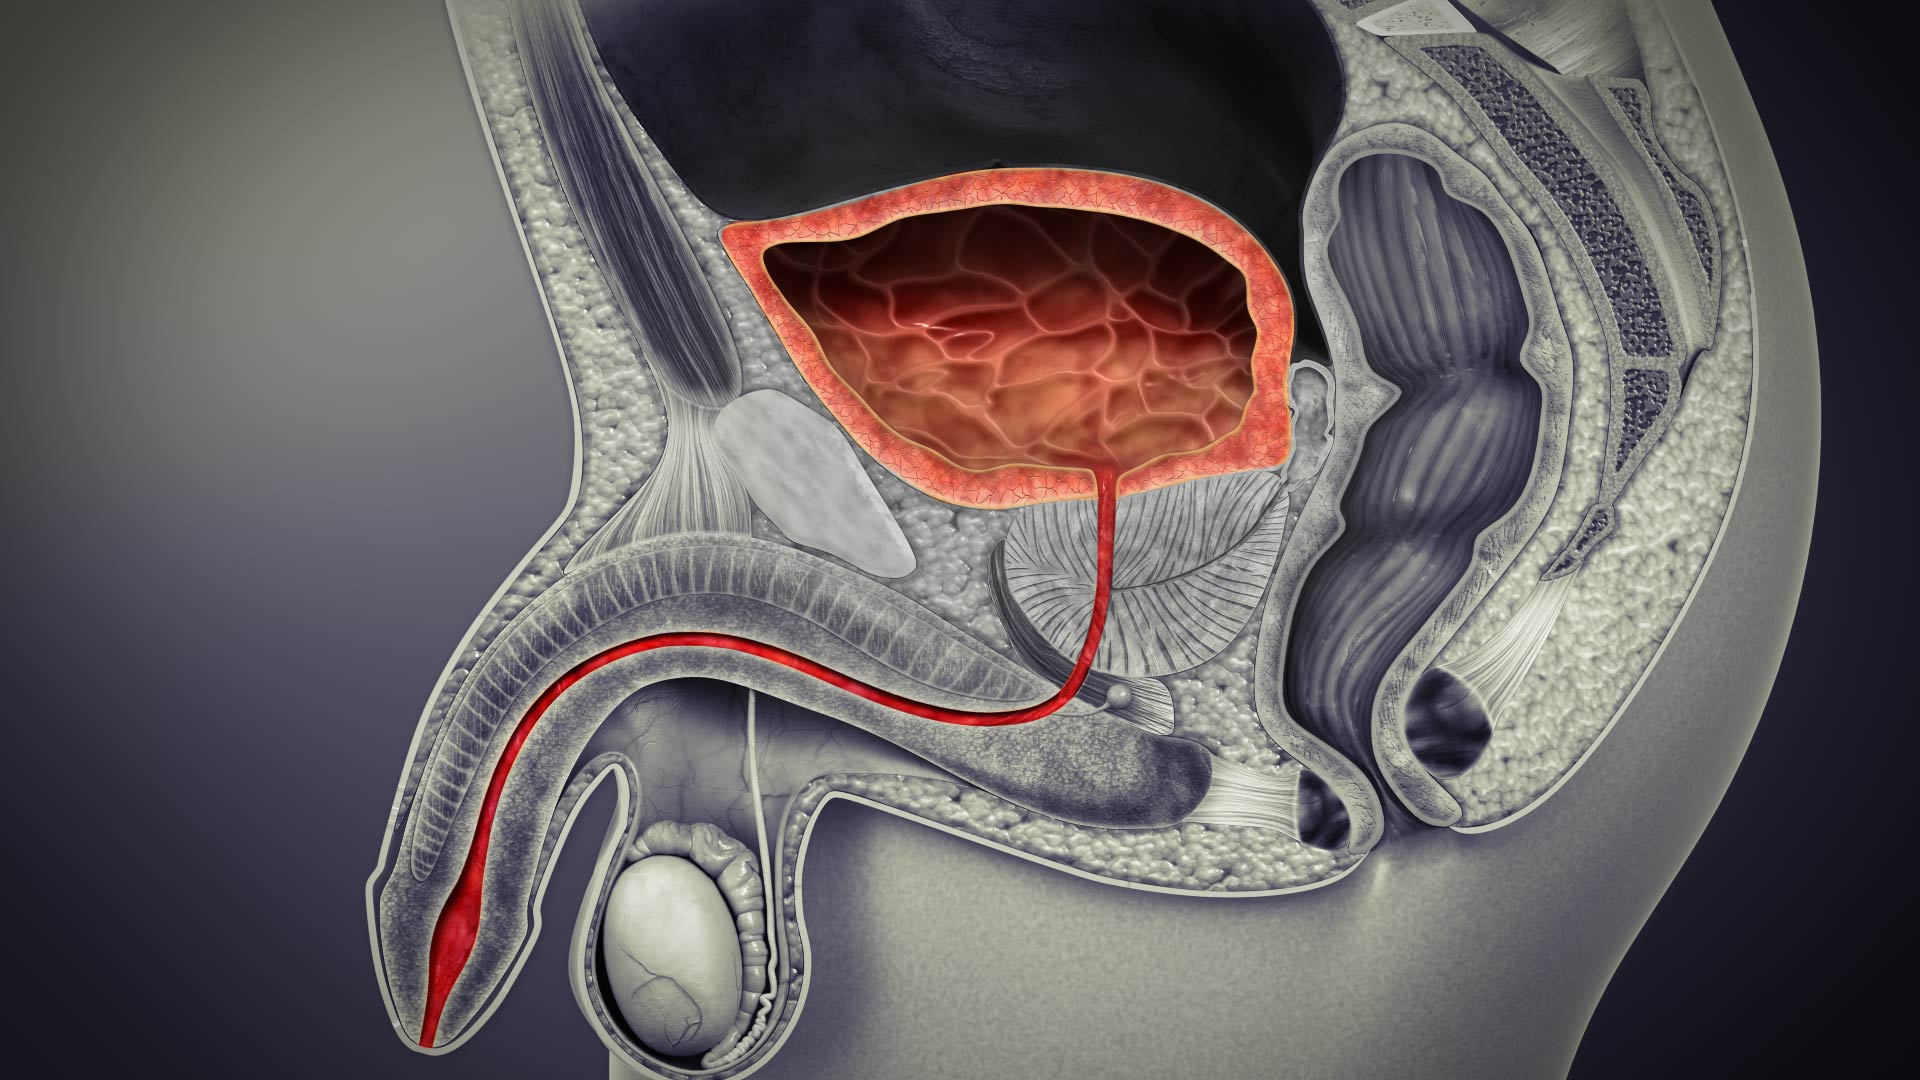 3D medical animations still showing Urinary Bladder